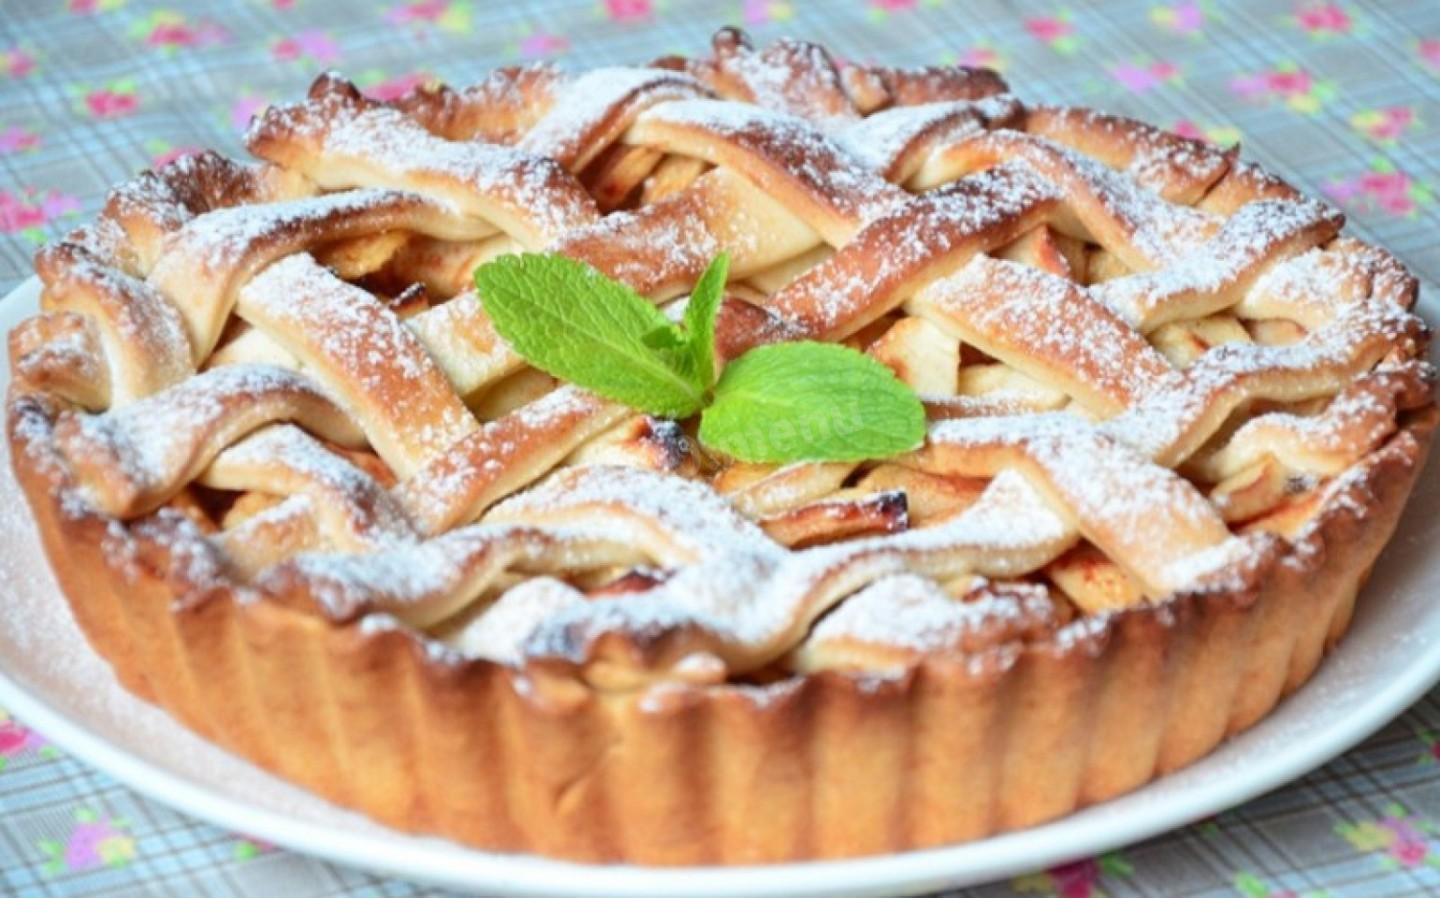 Пироги С Яблоками Рецепты С Фото Легкие